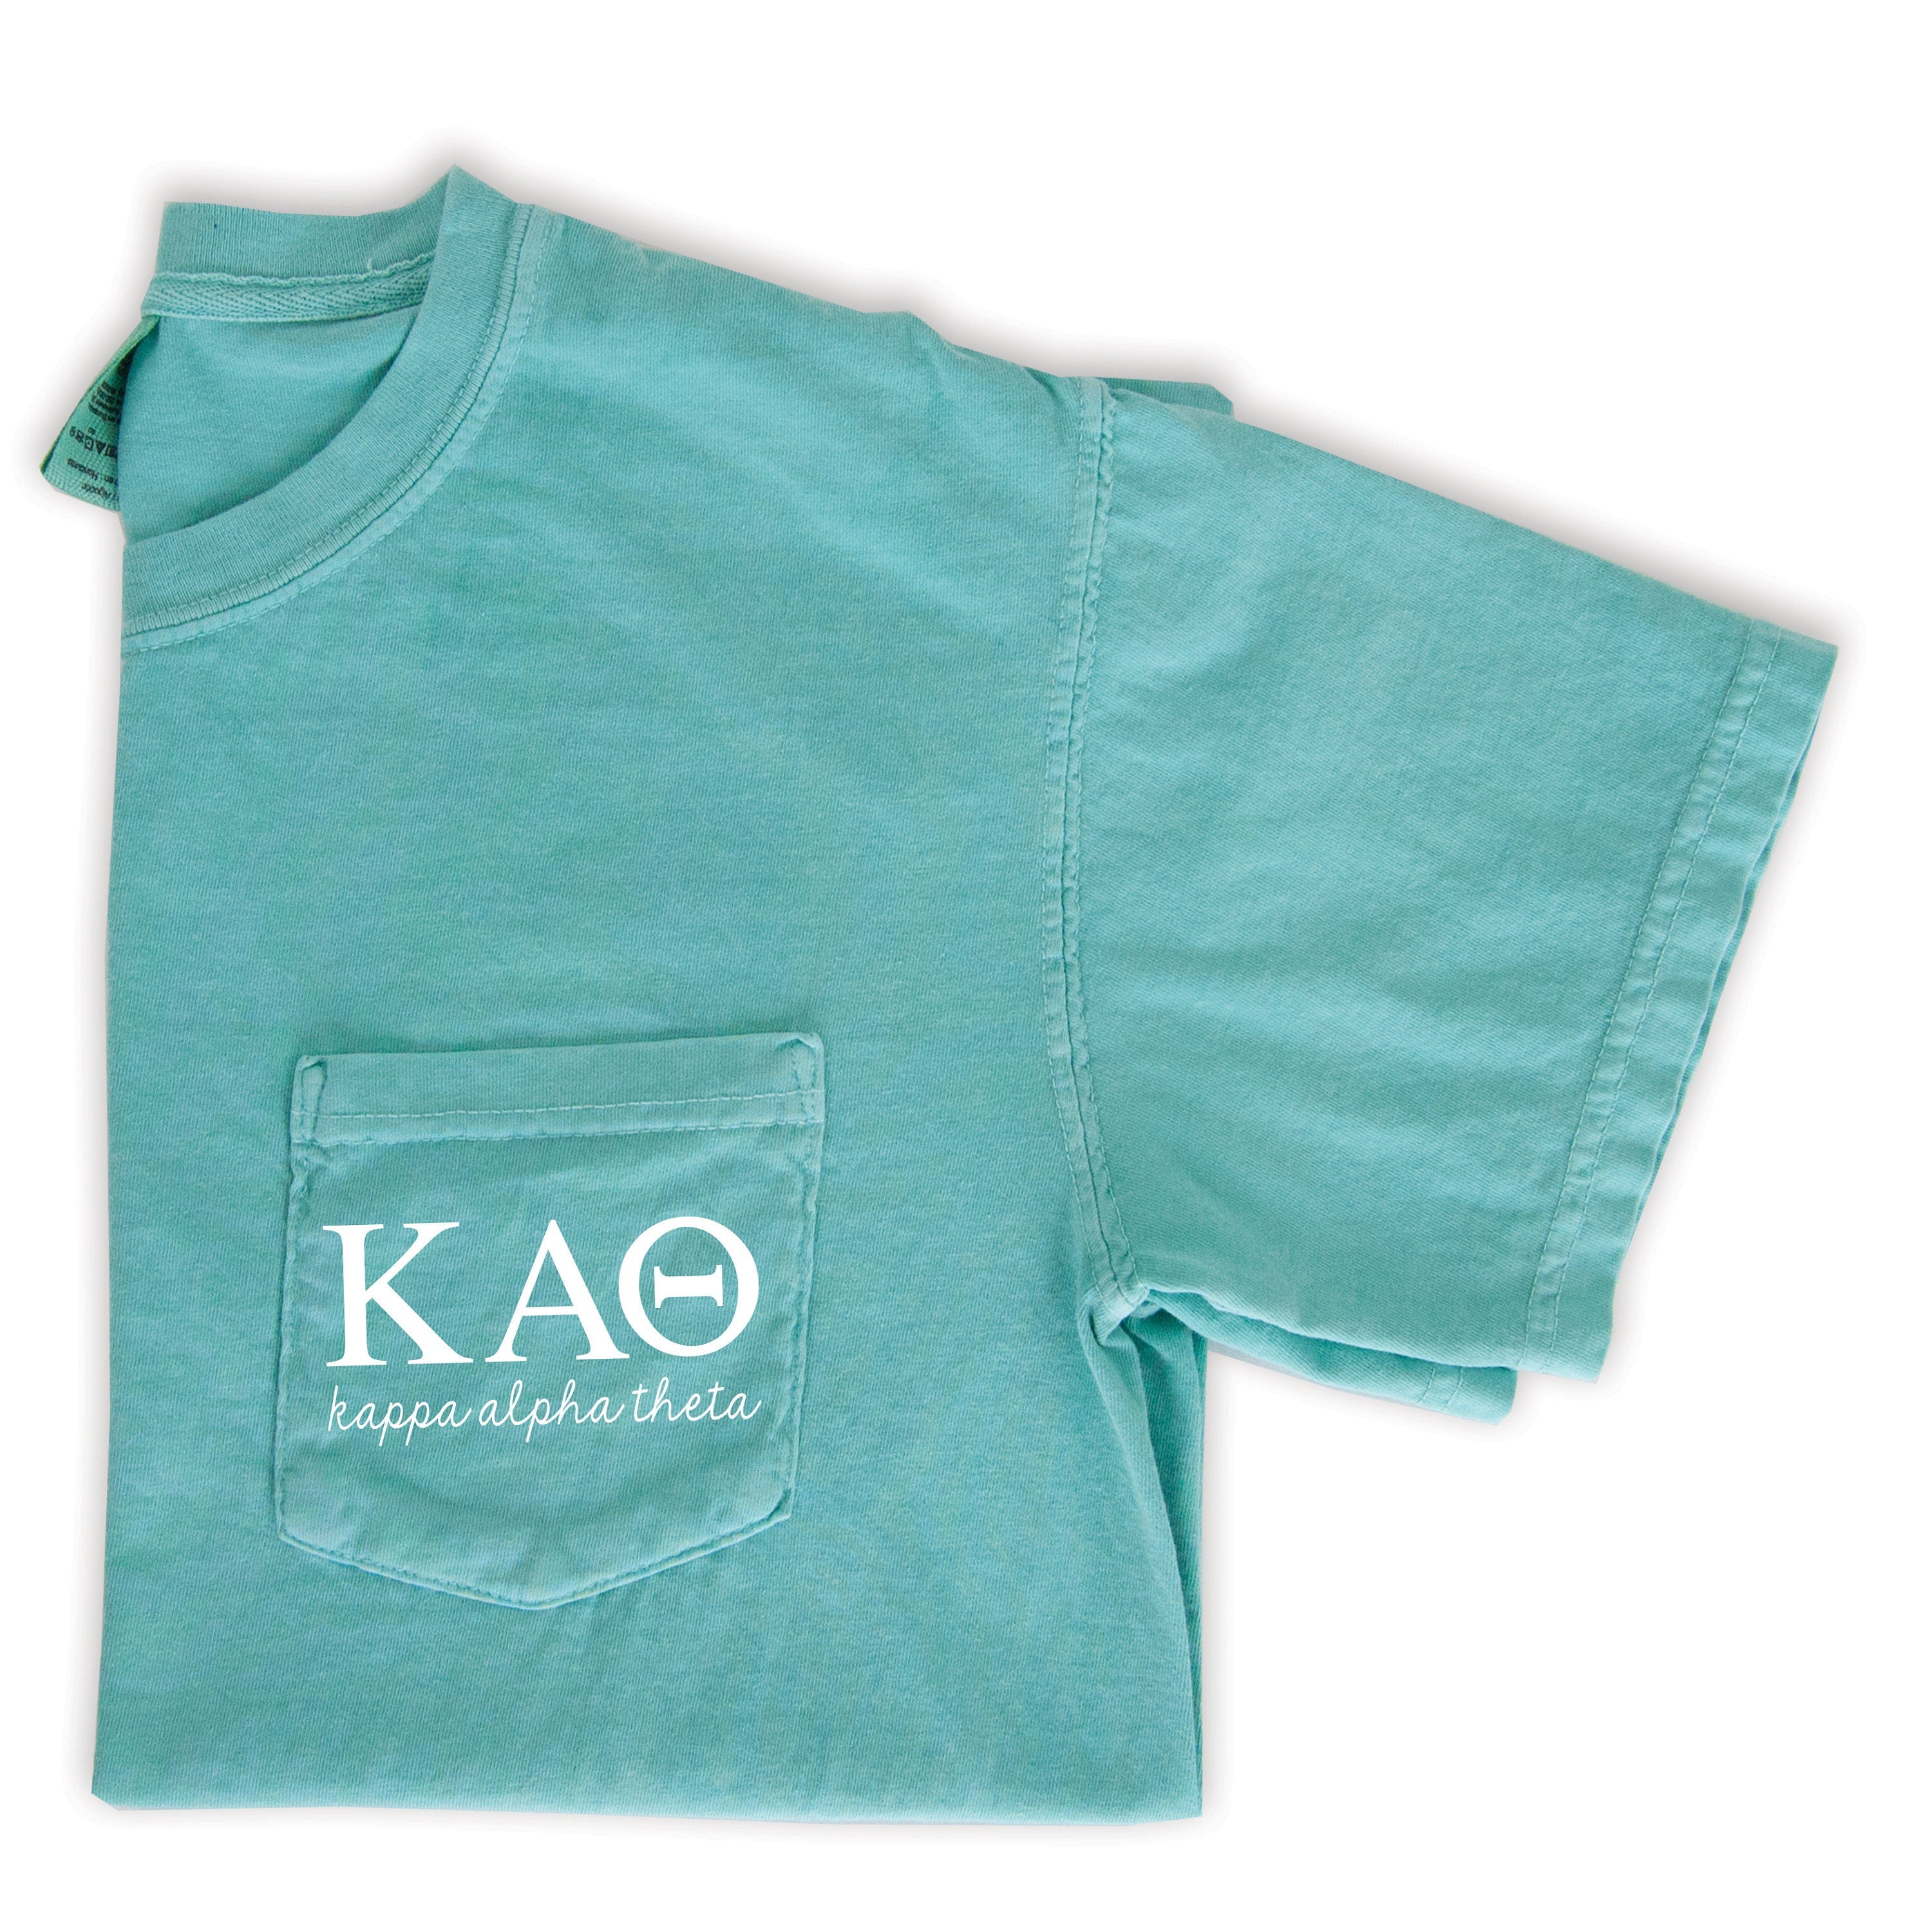 Kappa Alpha Theta Script Letters T-Shirt - Mint - Go Greek Chic